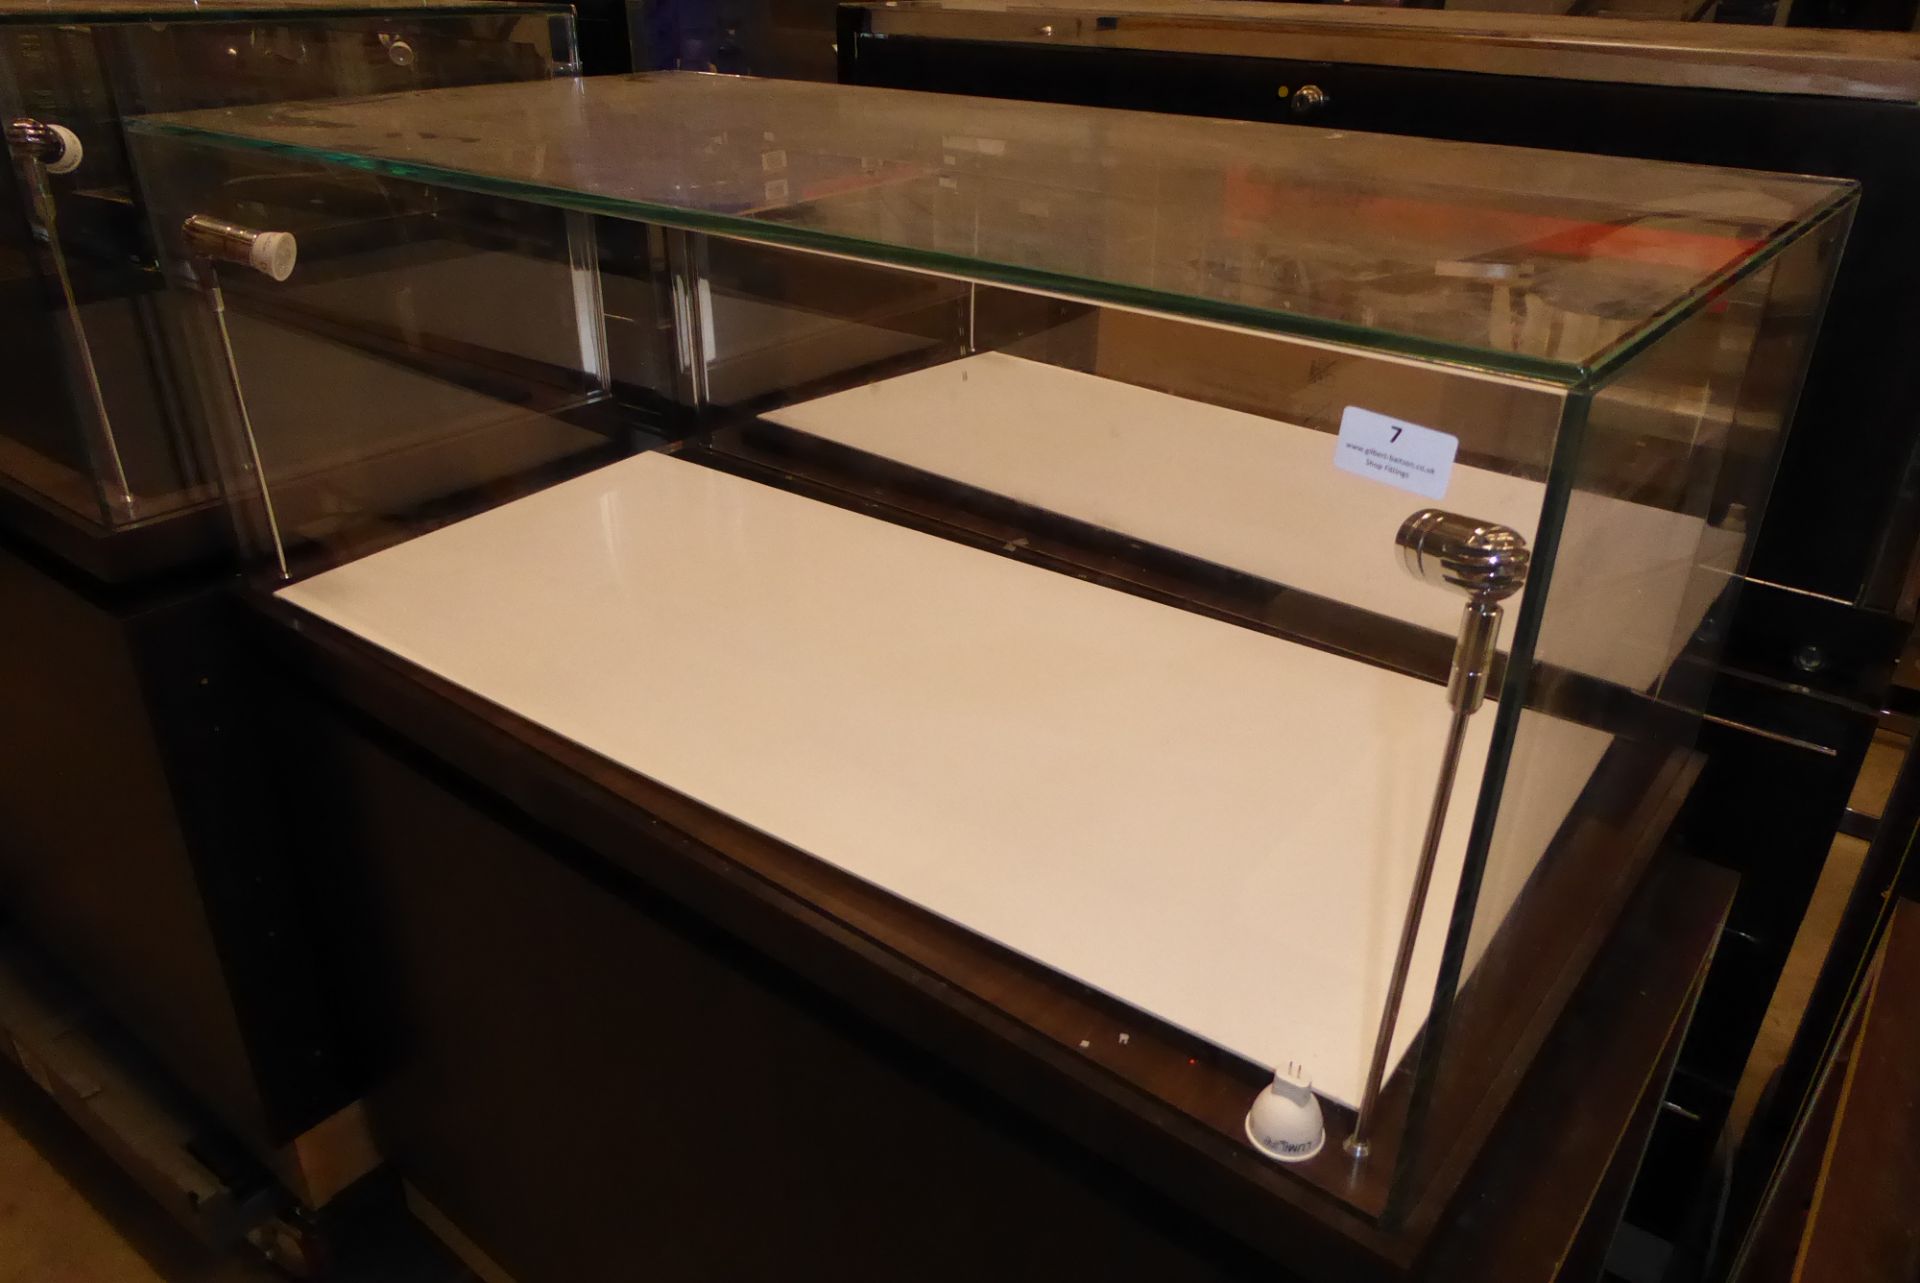 * Glazed illuminated display case storage drawers beneath led lighting 1000 x 500 x 1100 locking